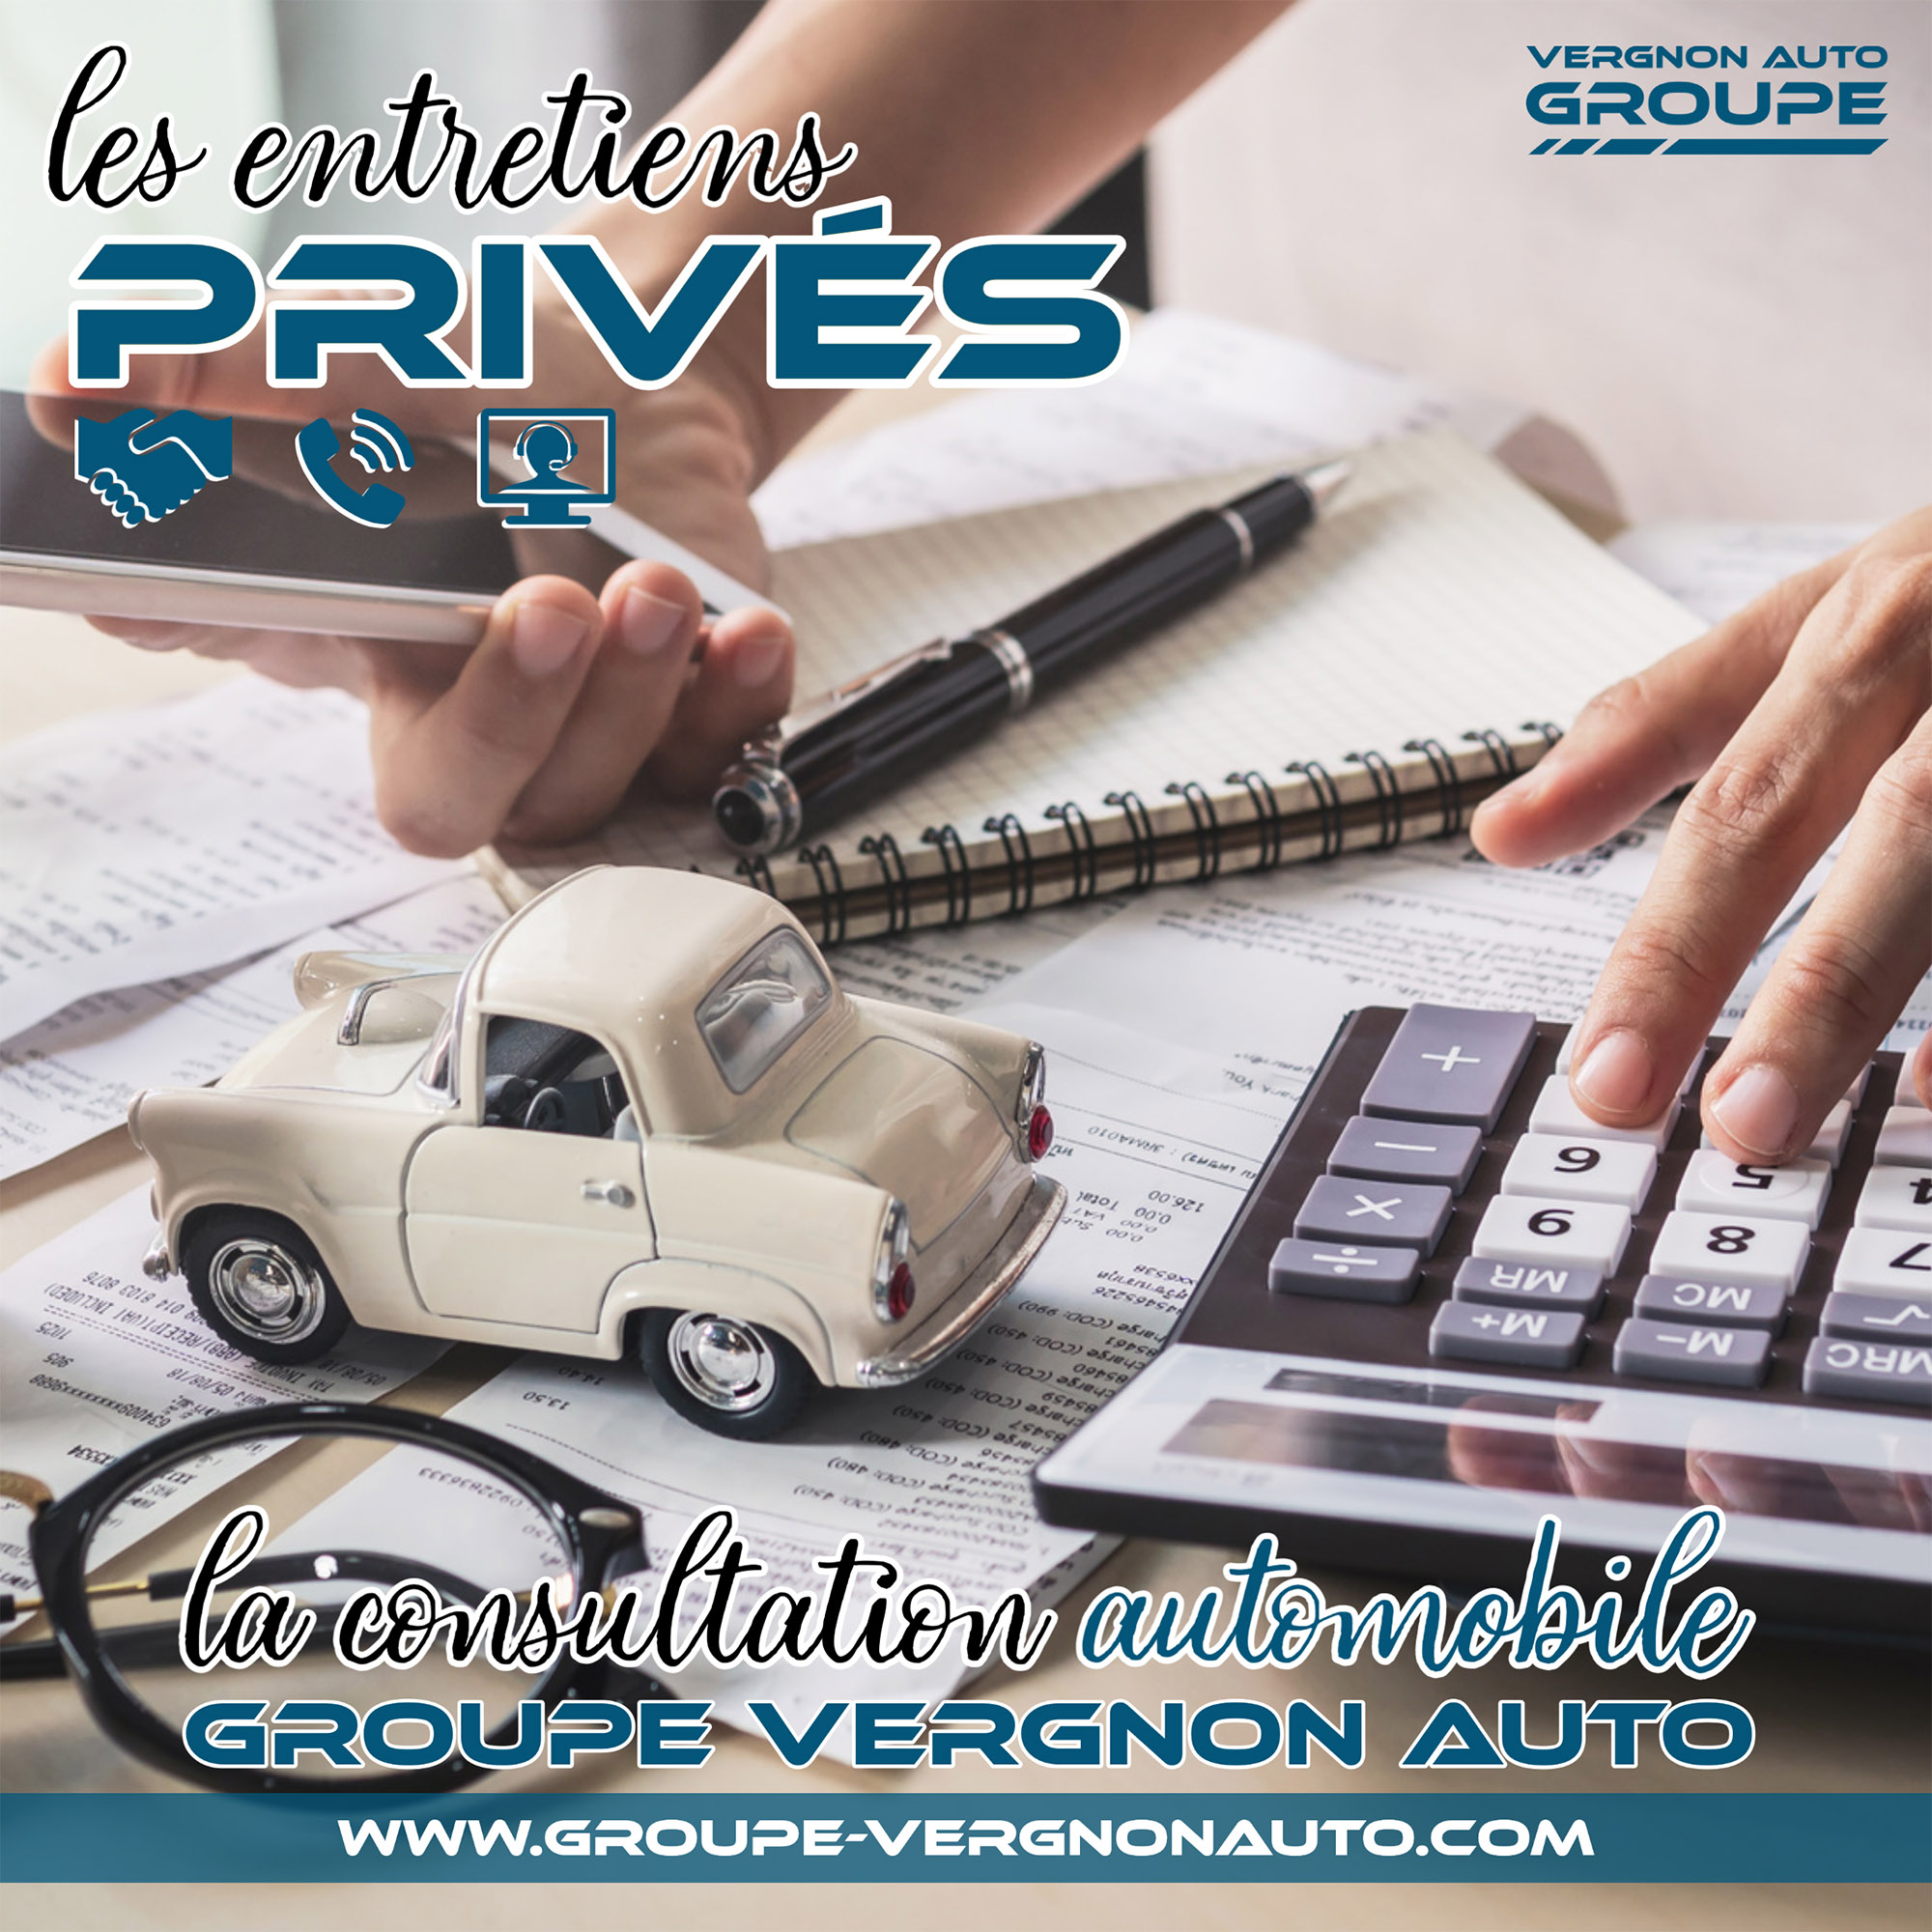 Les entretiens privés ! La consultation automobile Groupe Vergnon Auto !